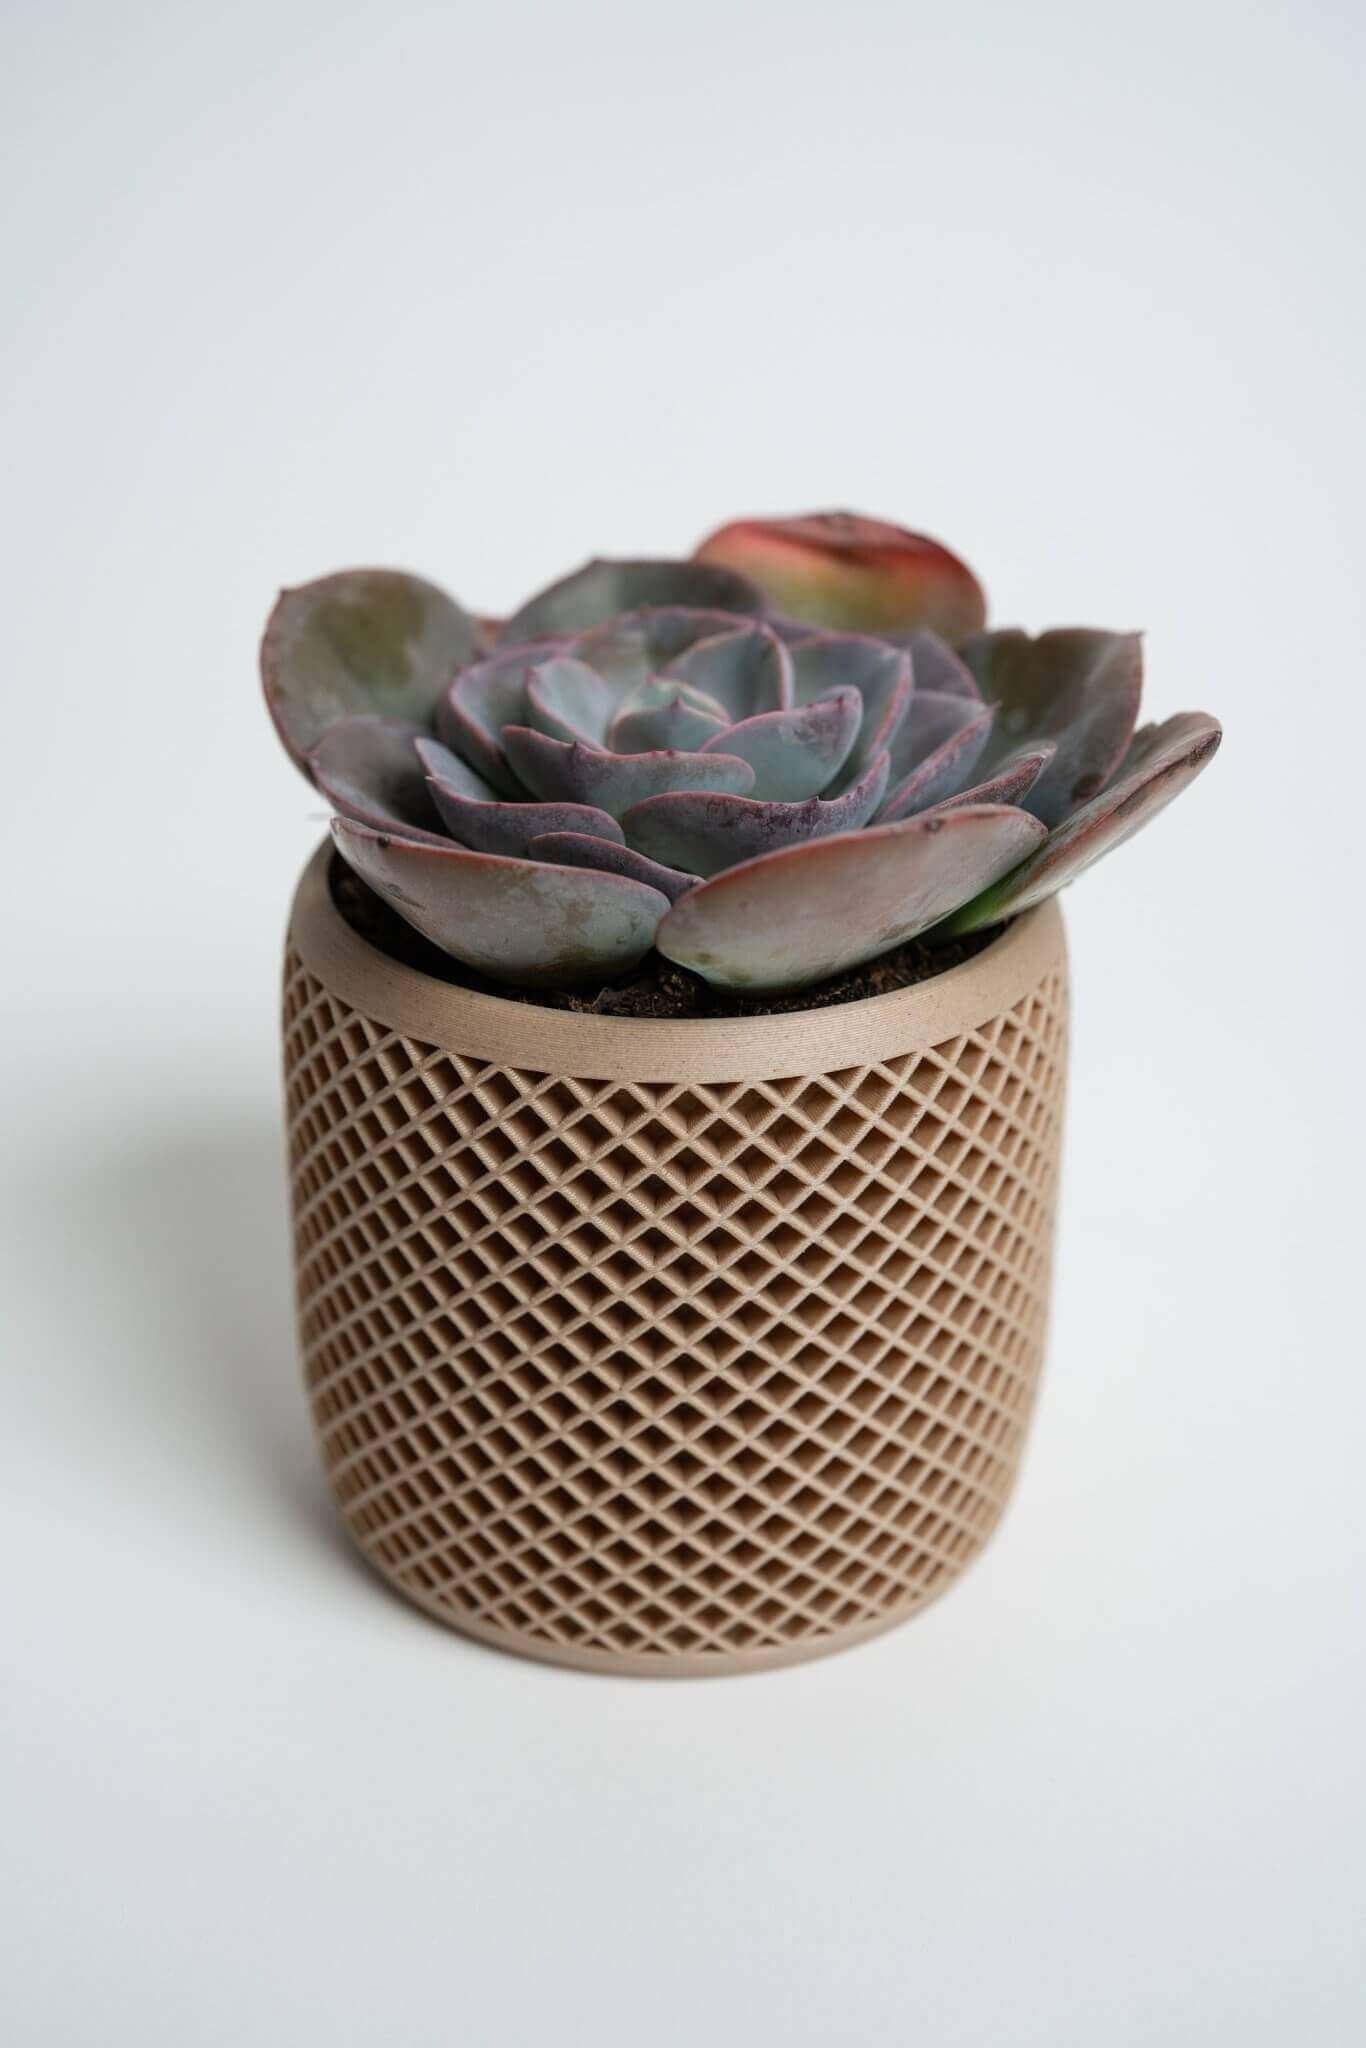 Vision geometric plant pot with succulent.